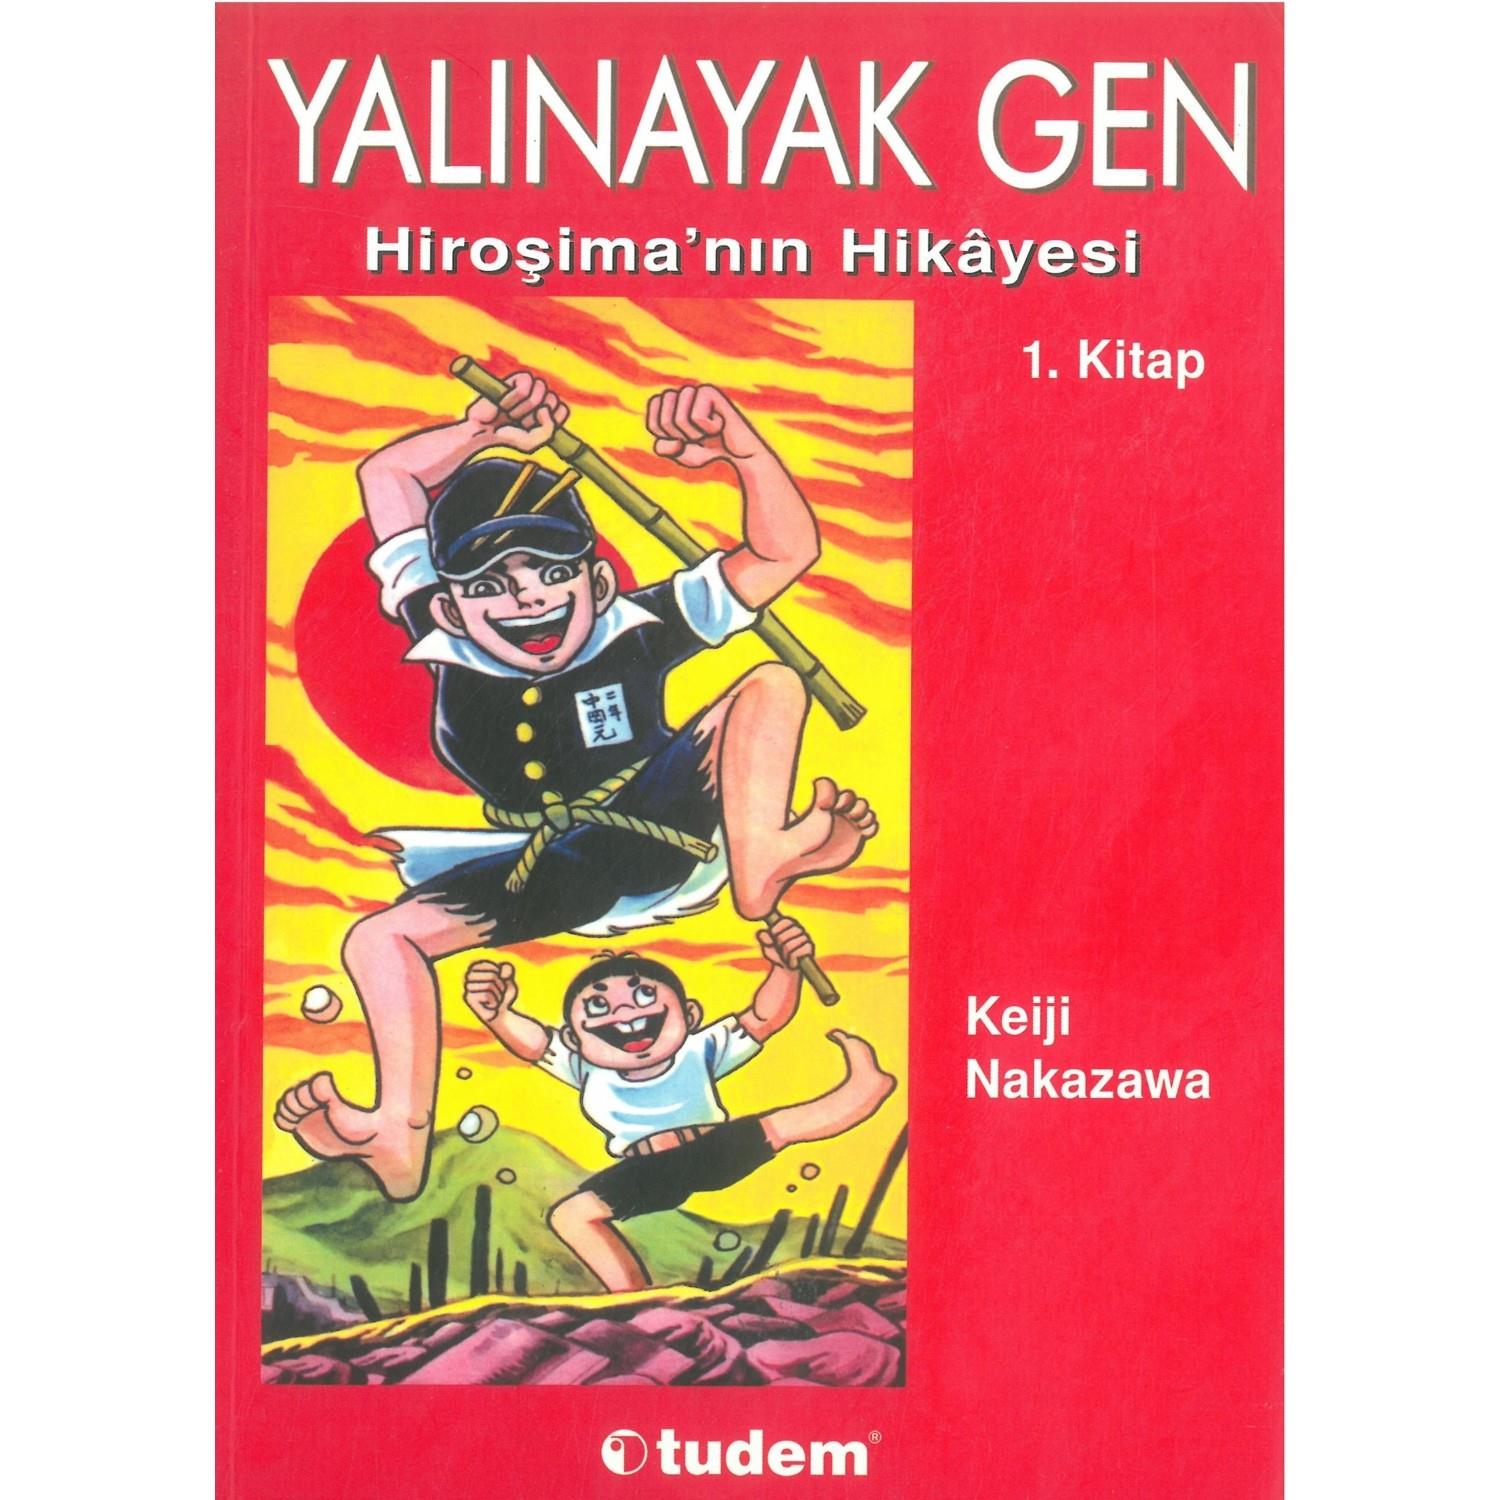 Yalınayak Gen 1. Kitap  Hiroşima'nın Hikayesi - Keji Nakazawa - Tudem Yayınları